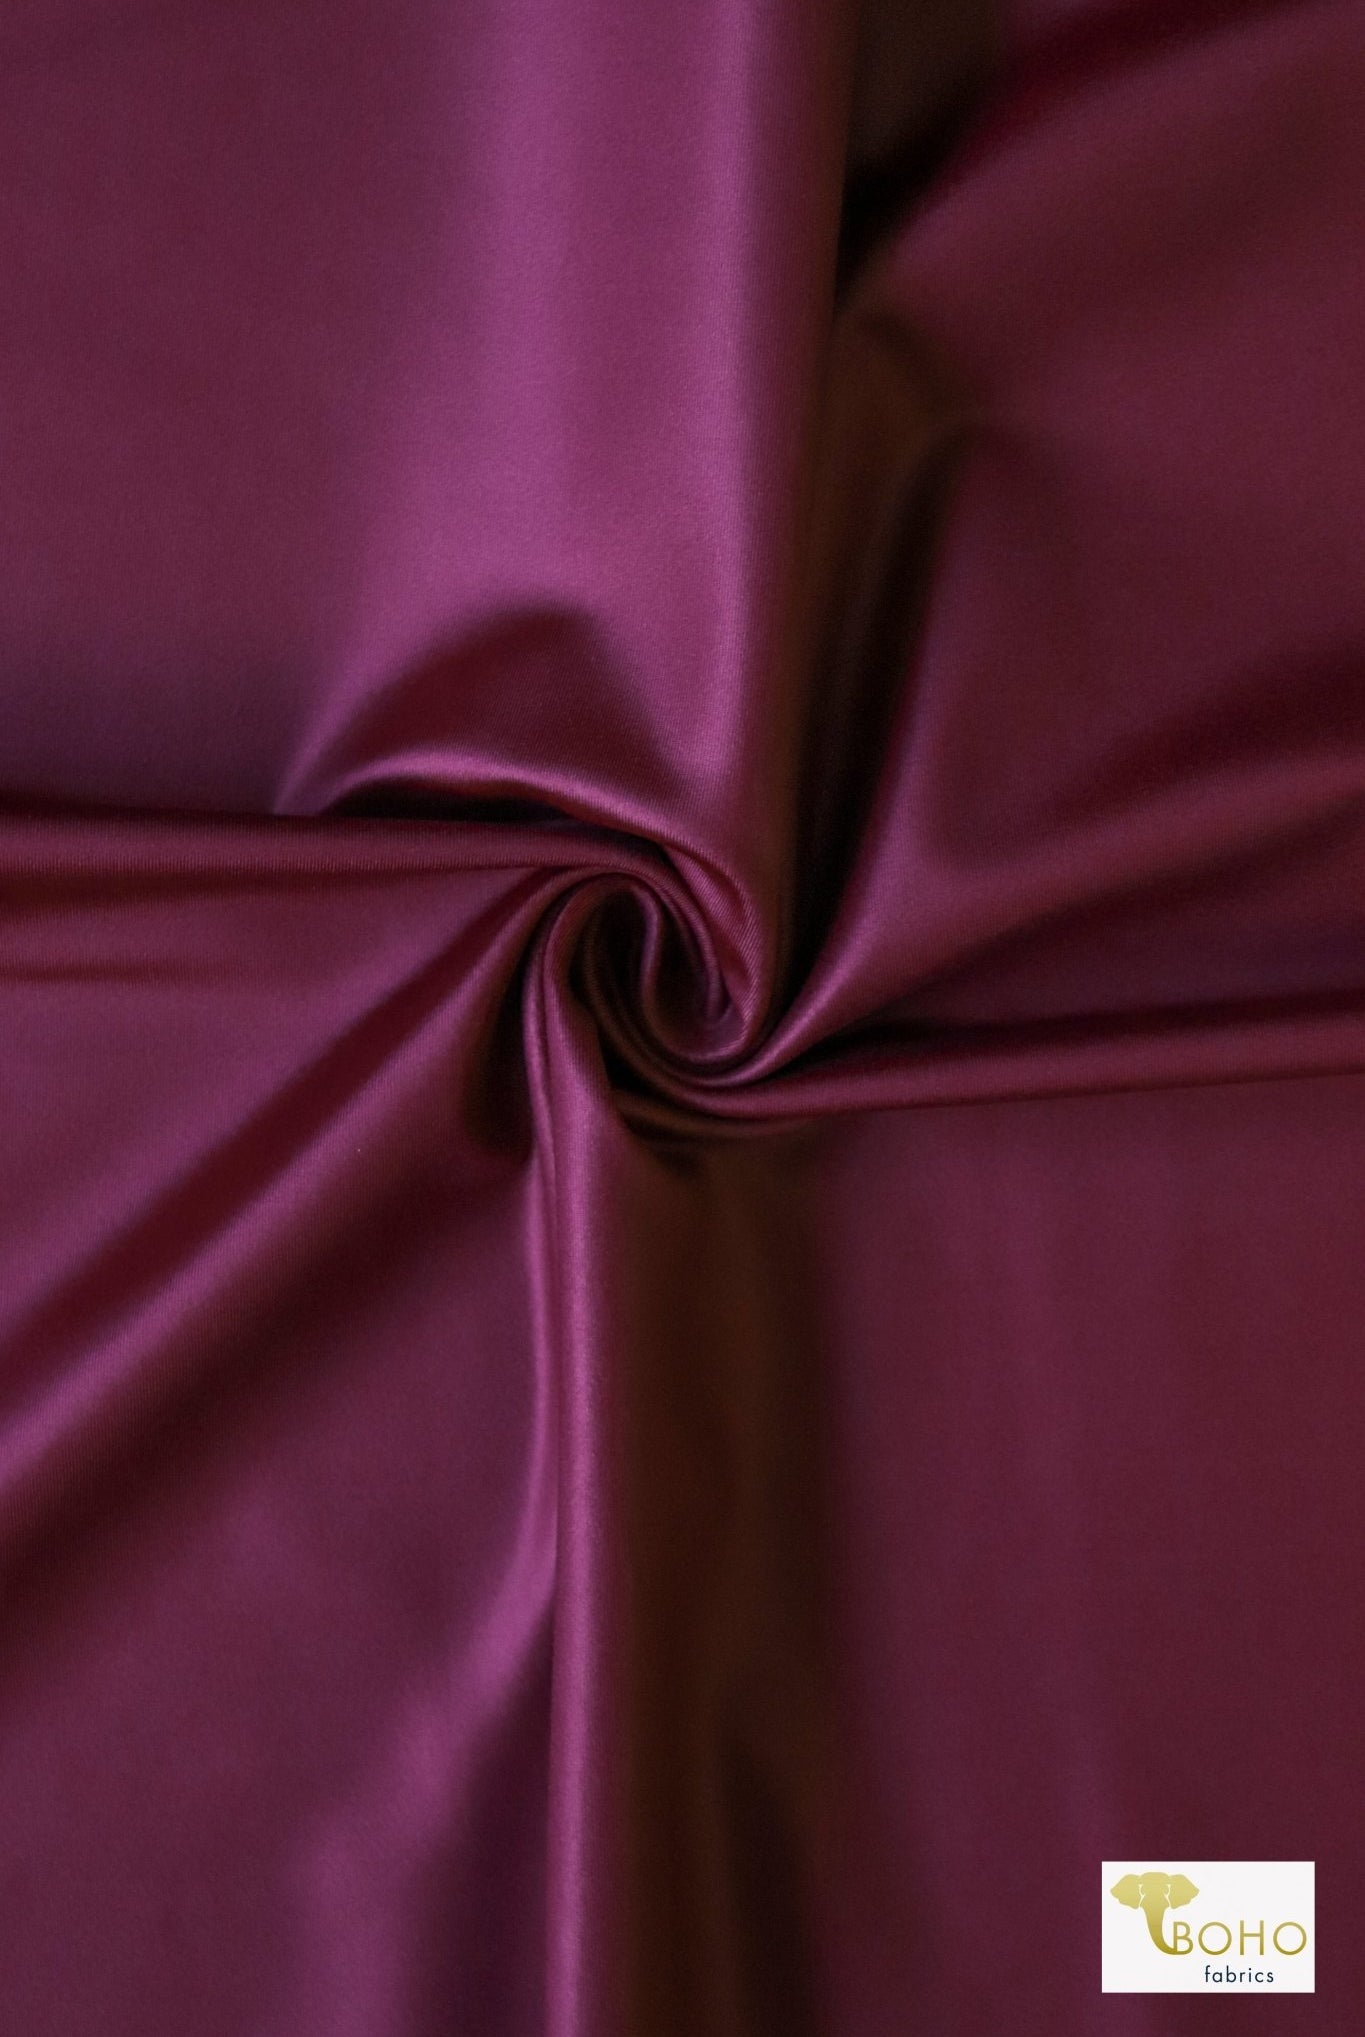 Burgundy Red Coated, Athletic Knit - Boho Fabrics